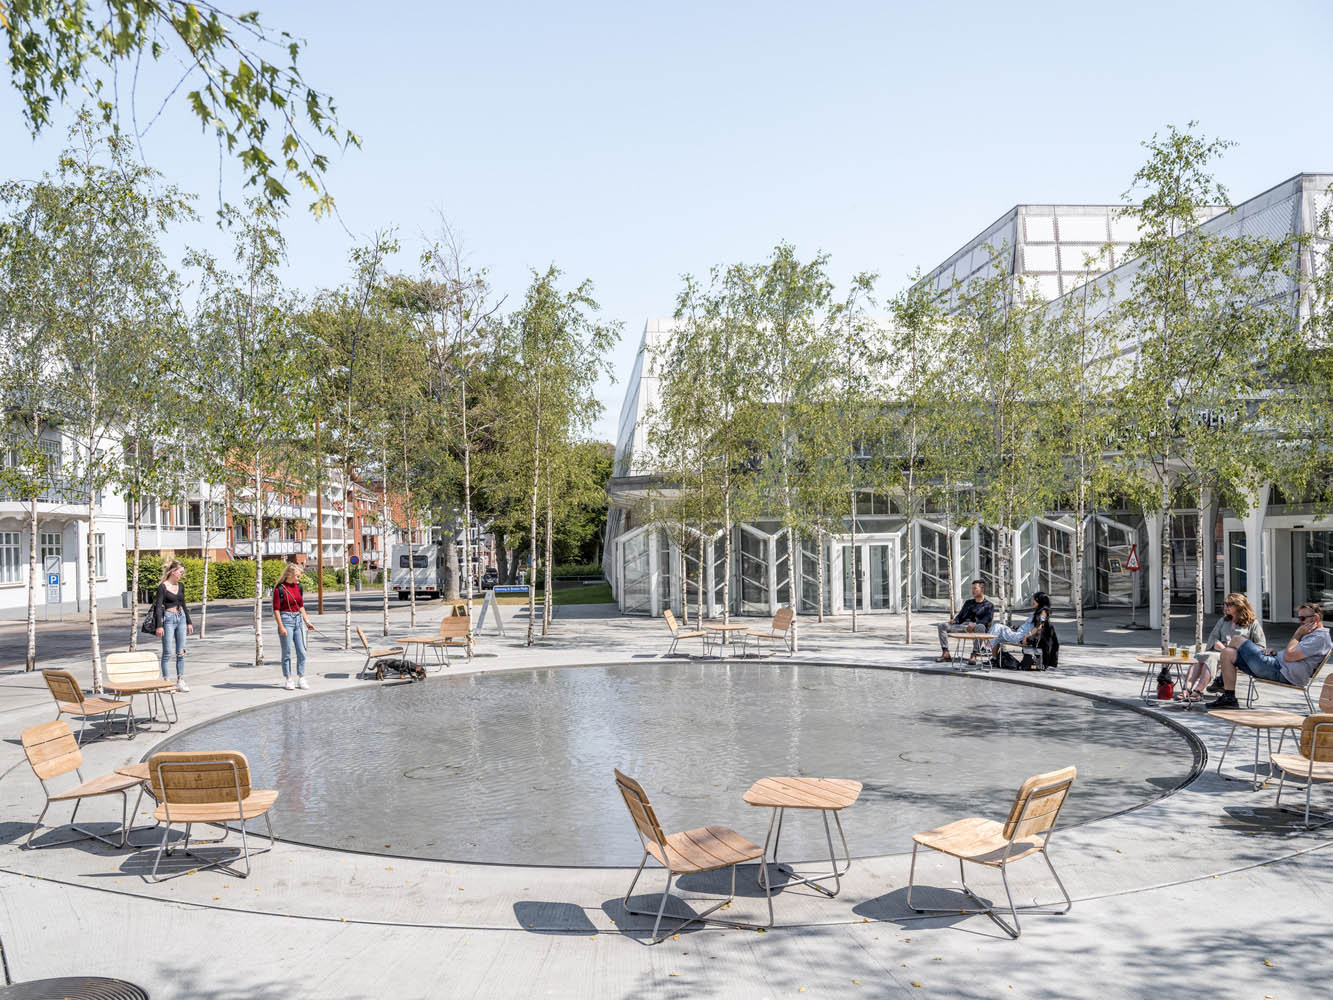 میدان هنینگ جی. کروزه در دانمارک طراحی شده توسط شرکت معماری  BIG